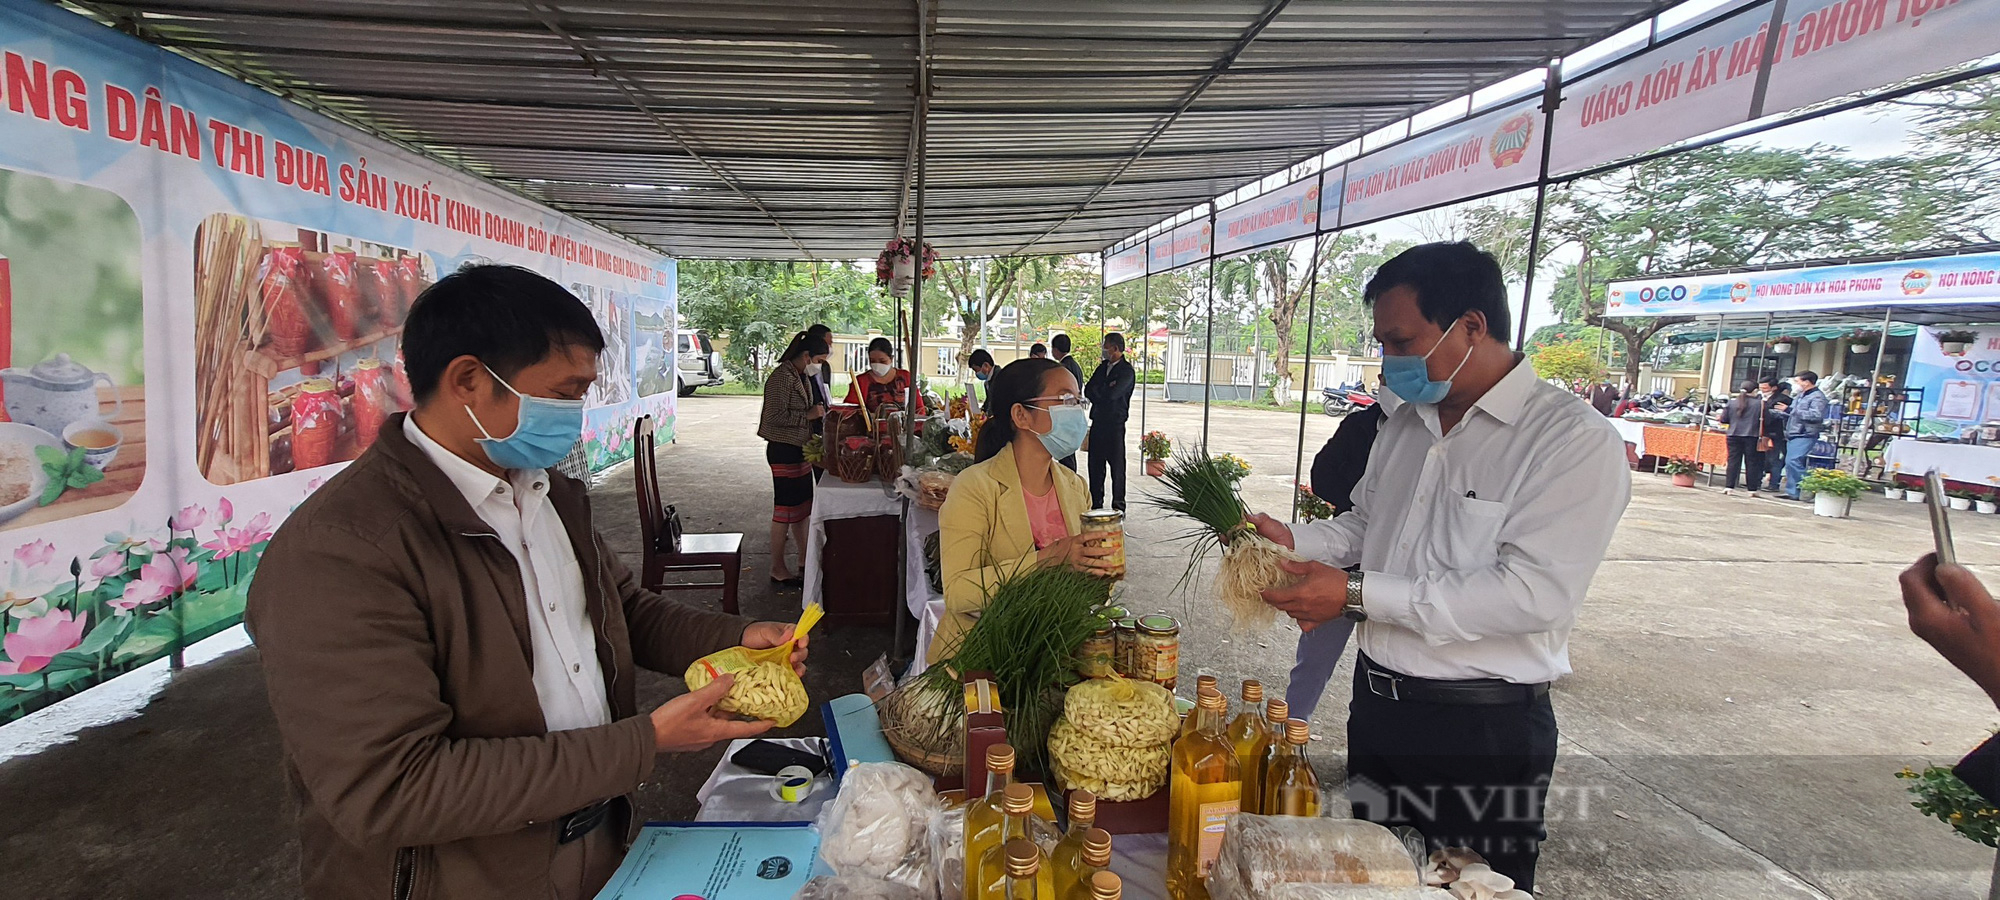 Đà Nẵng: Phong trào nông dân thi đua sản xuất kinh doanh giỏi tạo động lực phát triển kinh tế, xã hội nông thôn - Ảnh 3.